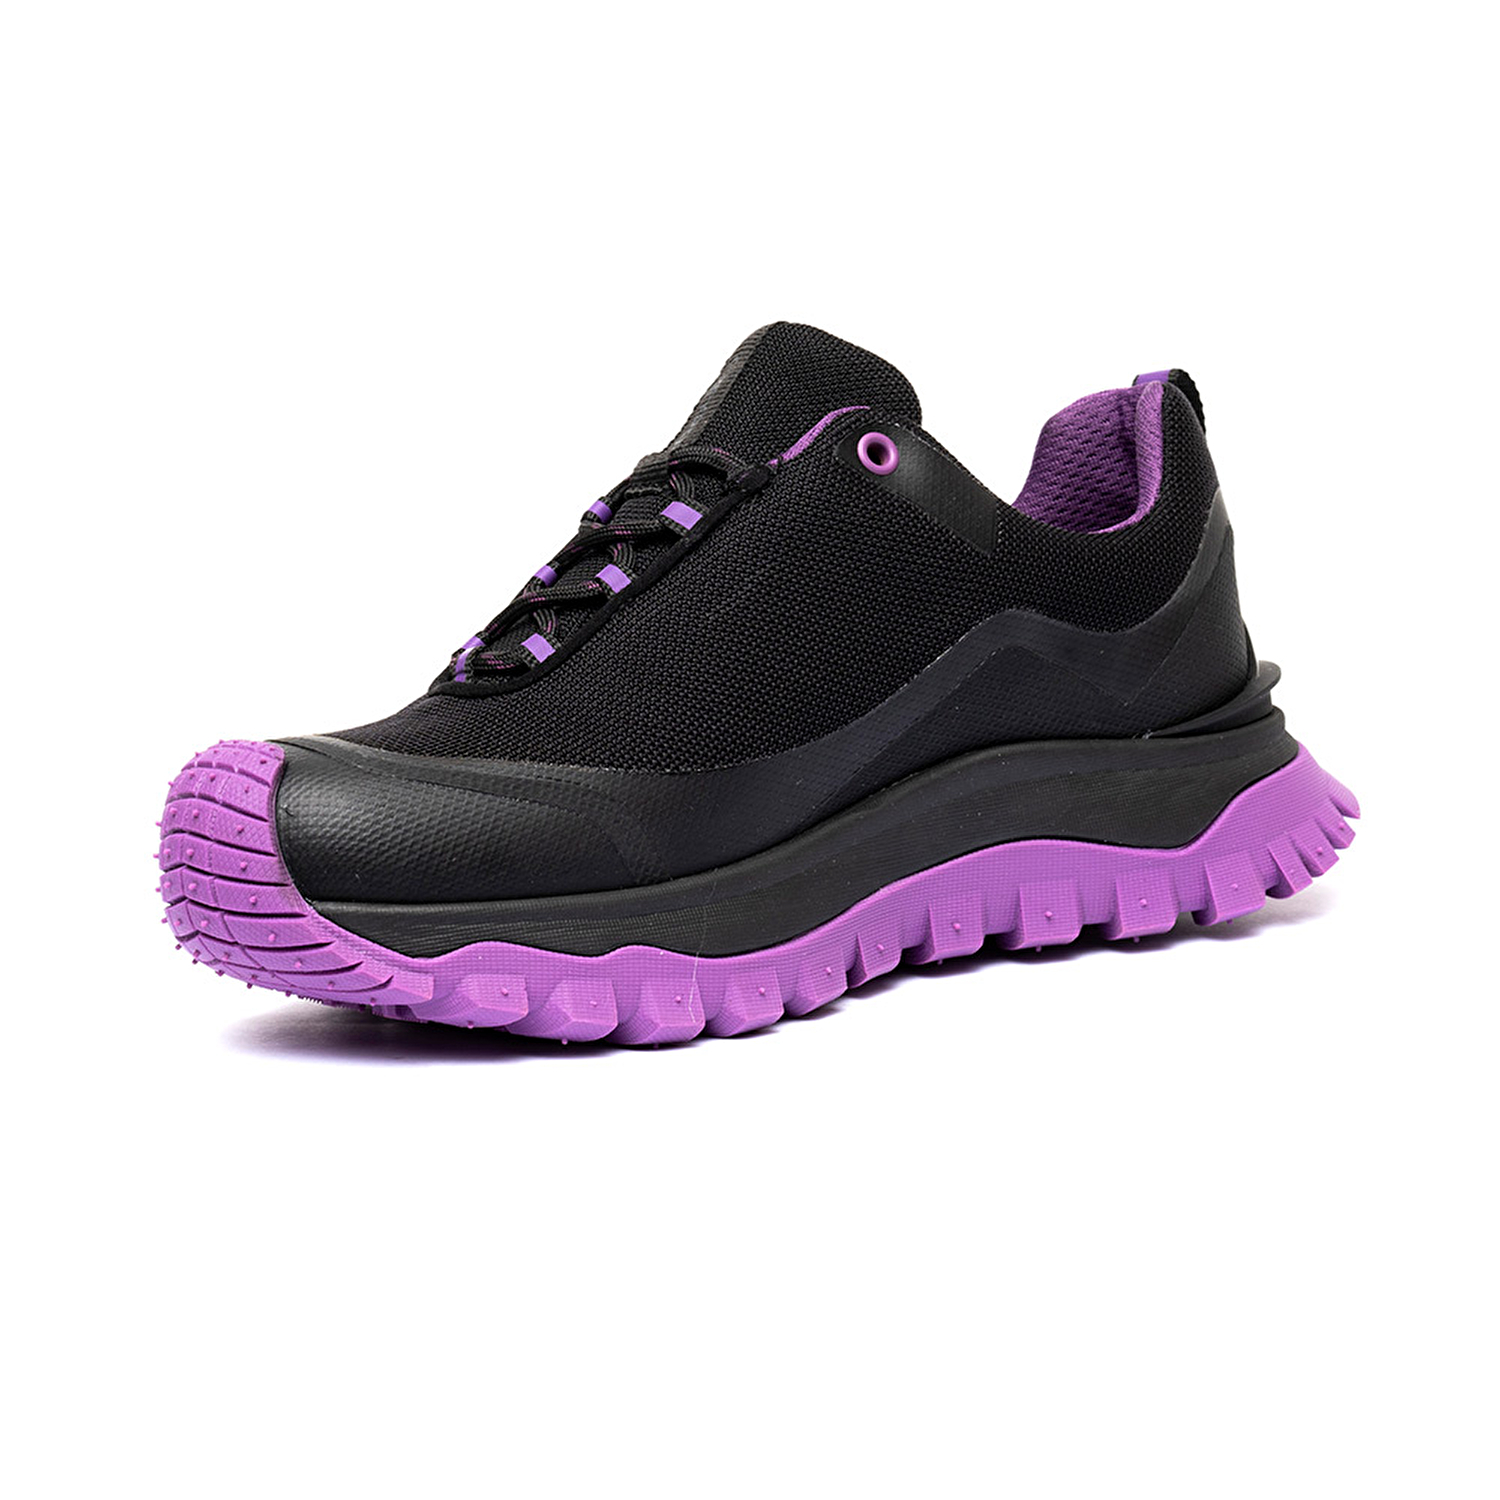 Kadın Siyah Mor Su Geçirmez Outdoor Ayakkabı 3K2GA16357-2